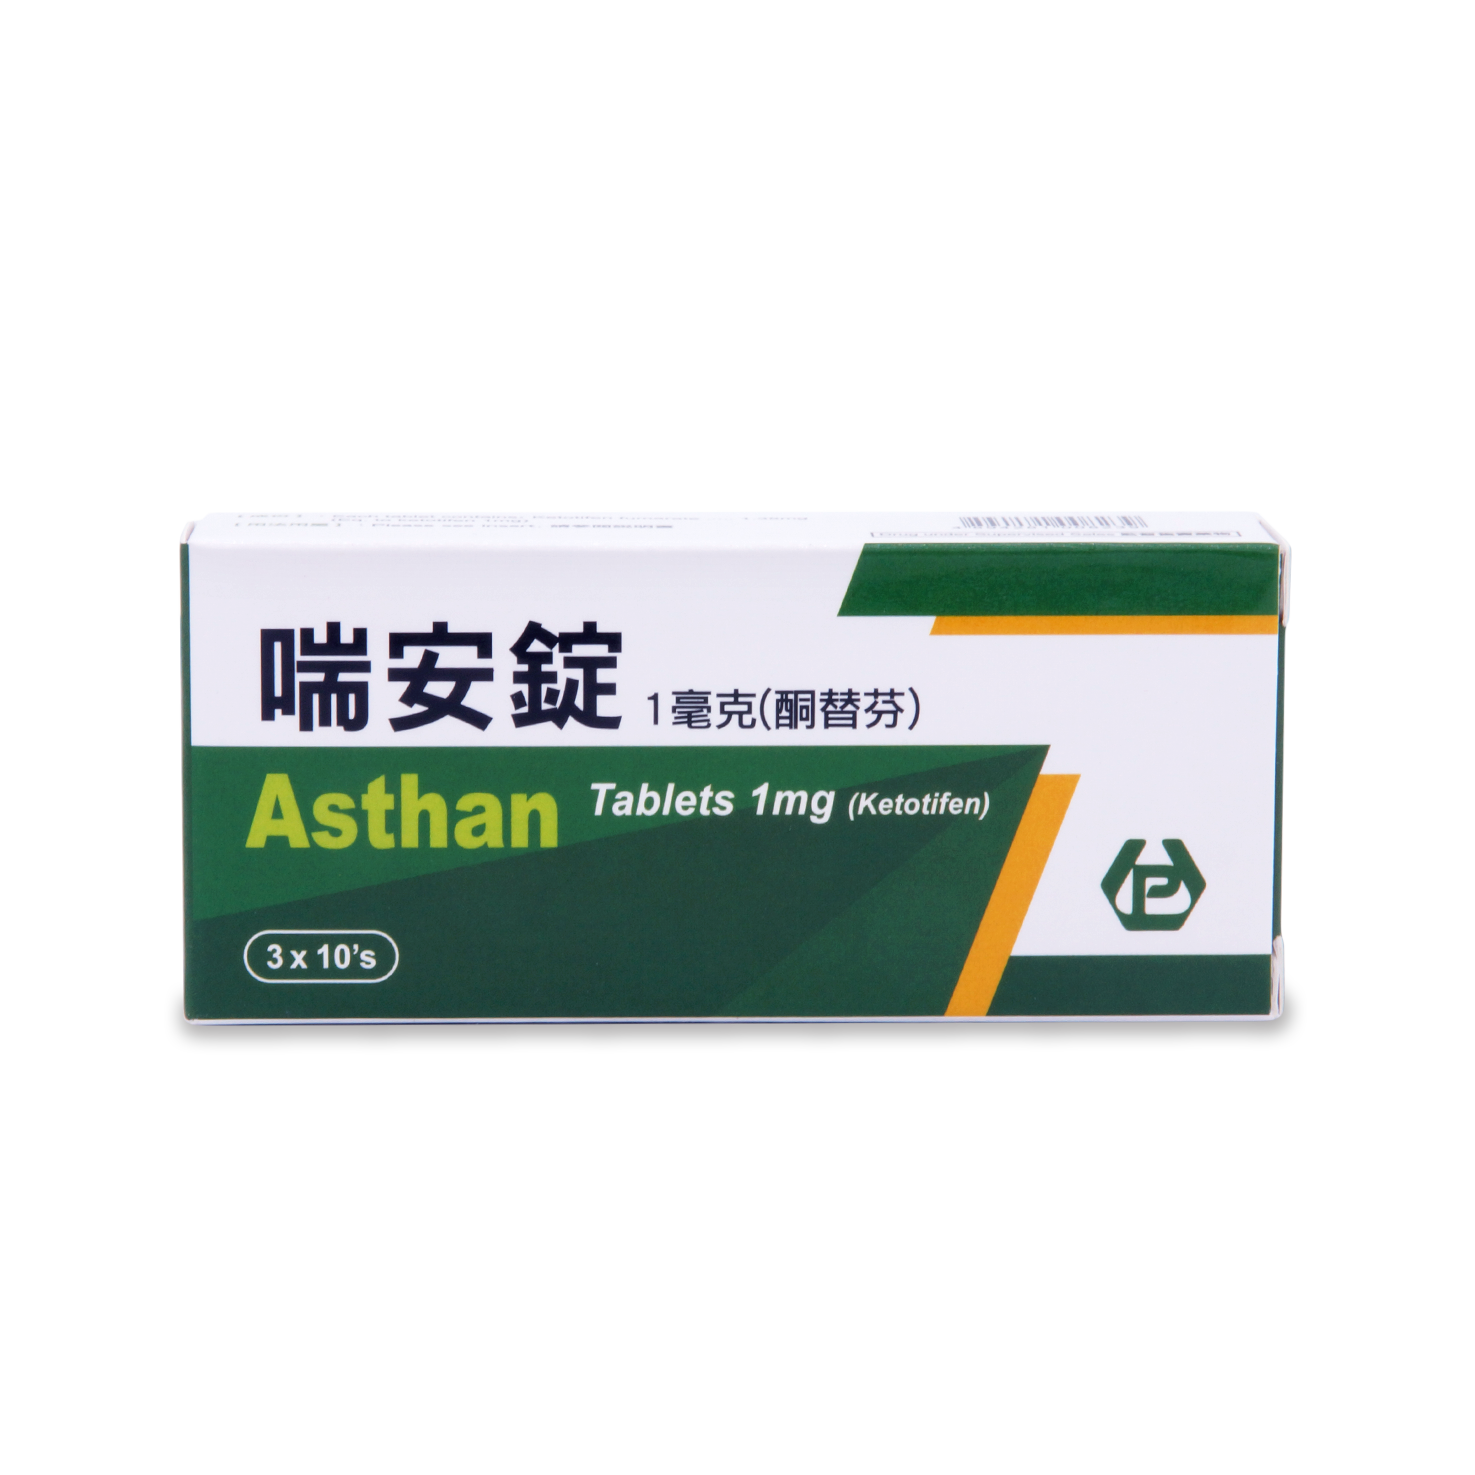 喘安錠  3x10's (P1) Asthan Tablets 1mg 3x10's